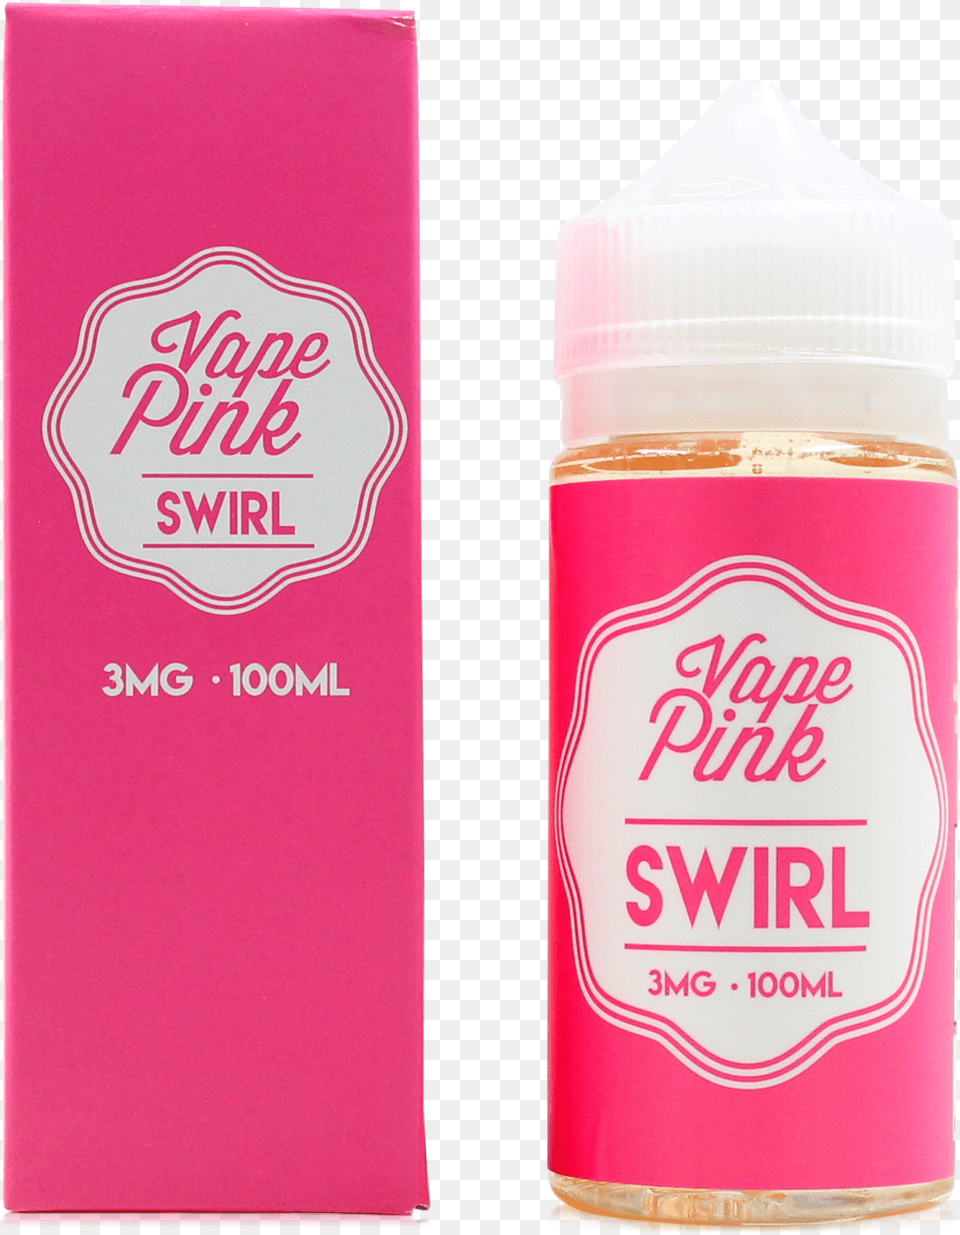 Vape Pink Swirl E Liquid Vape Pink Cookie Butter Salts, Bottle, Cosmetics, Book, Publication Free Png